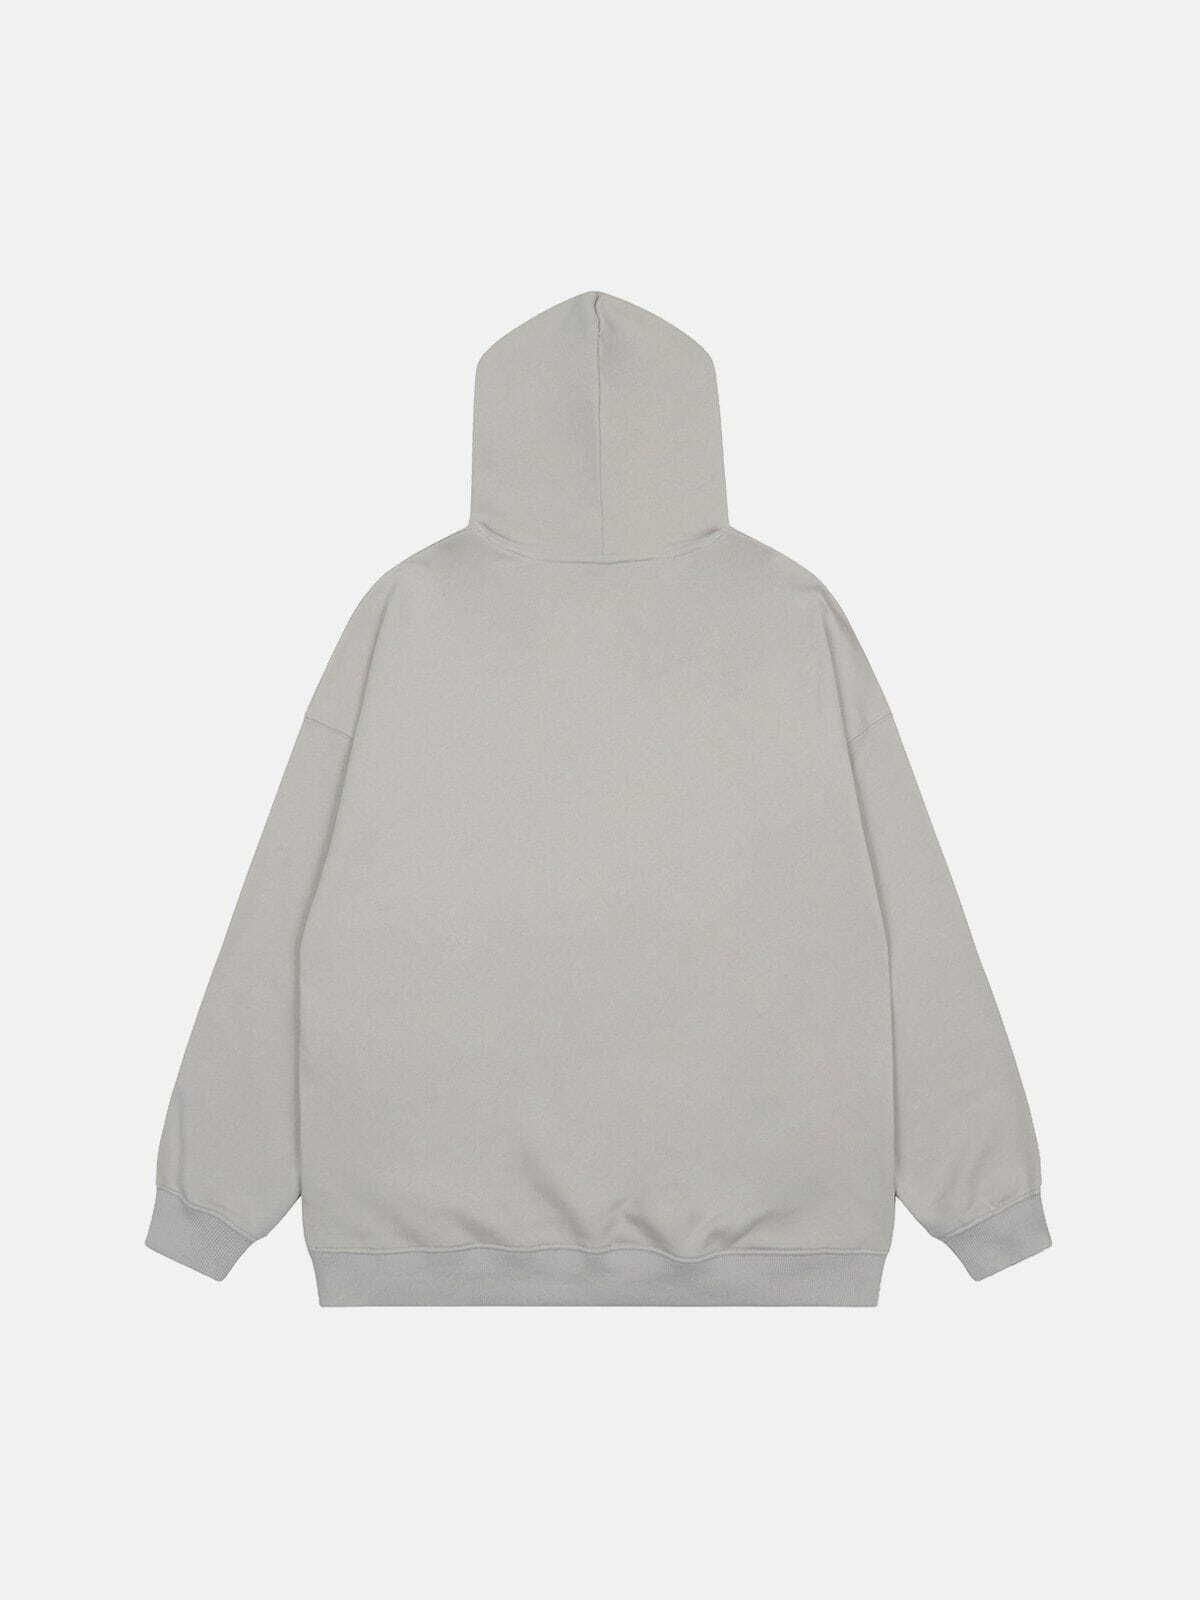 dynamic doberman print hoodie edgy streetwear 2363